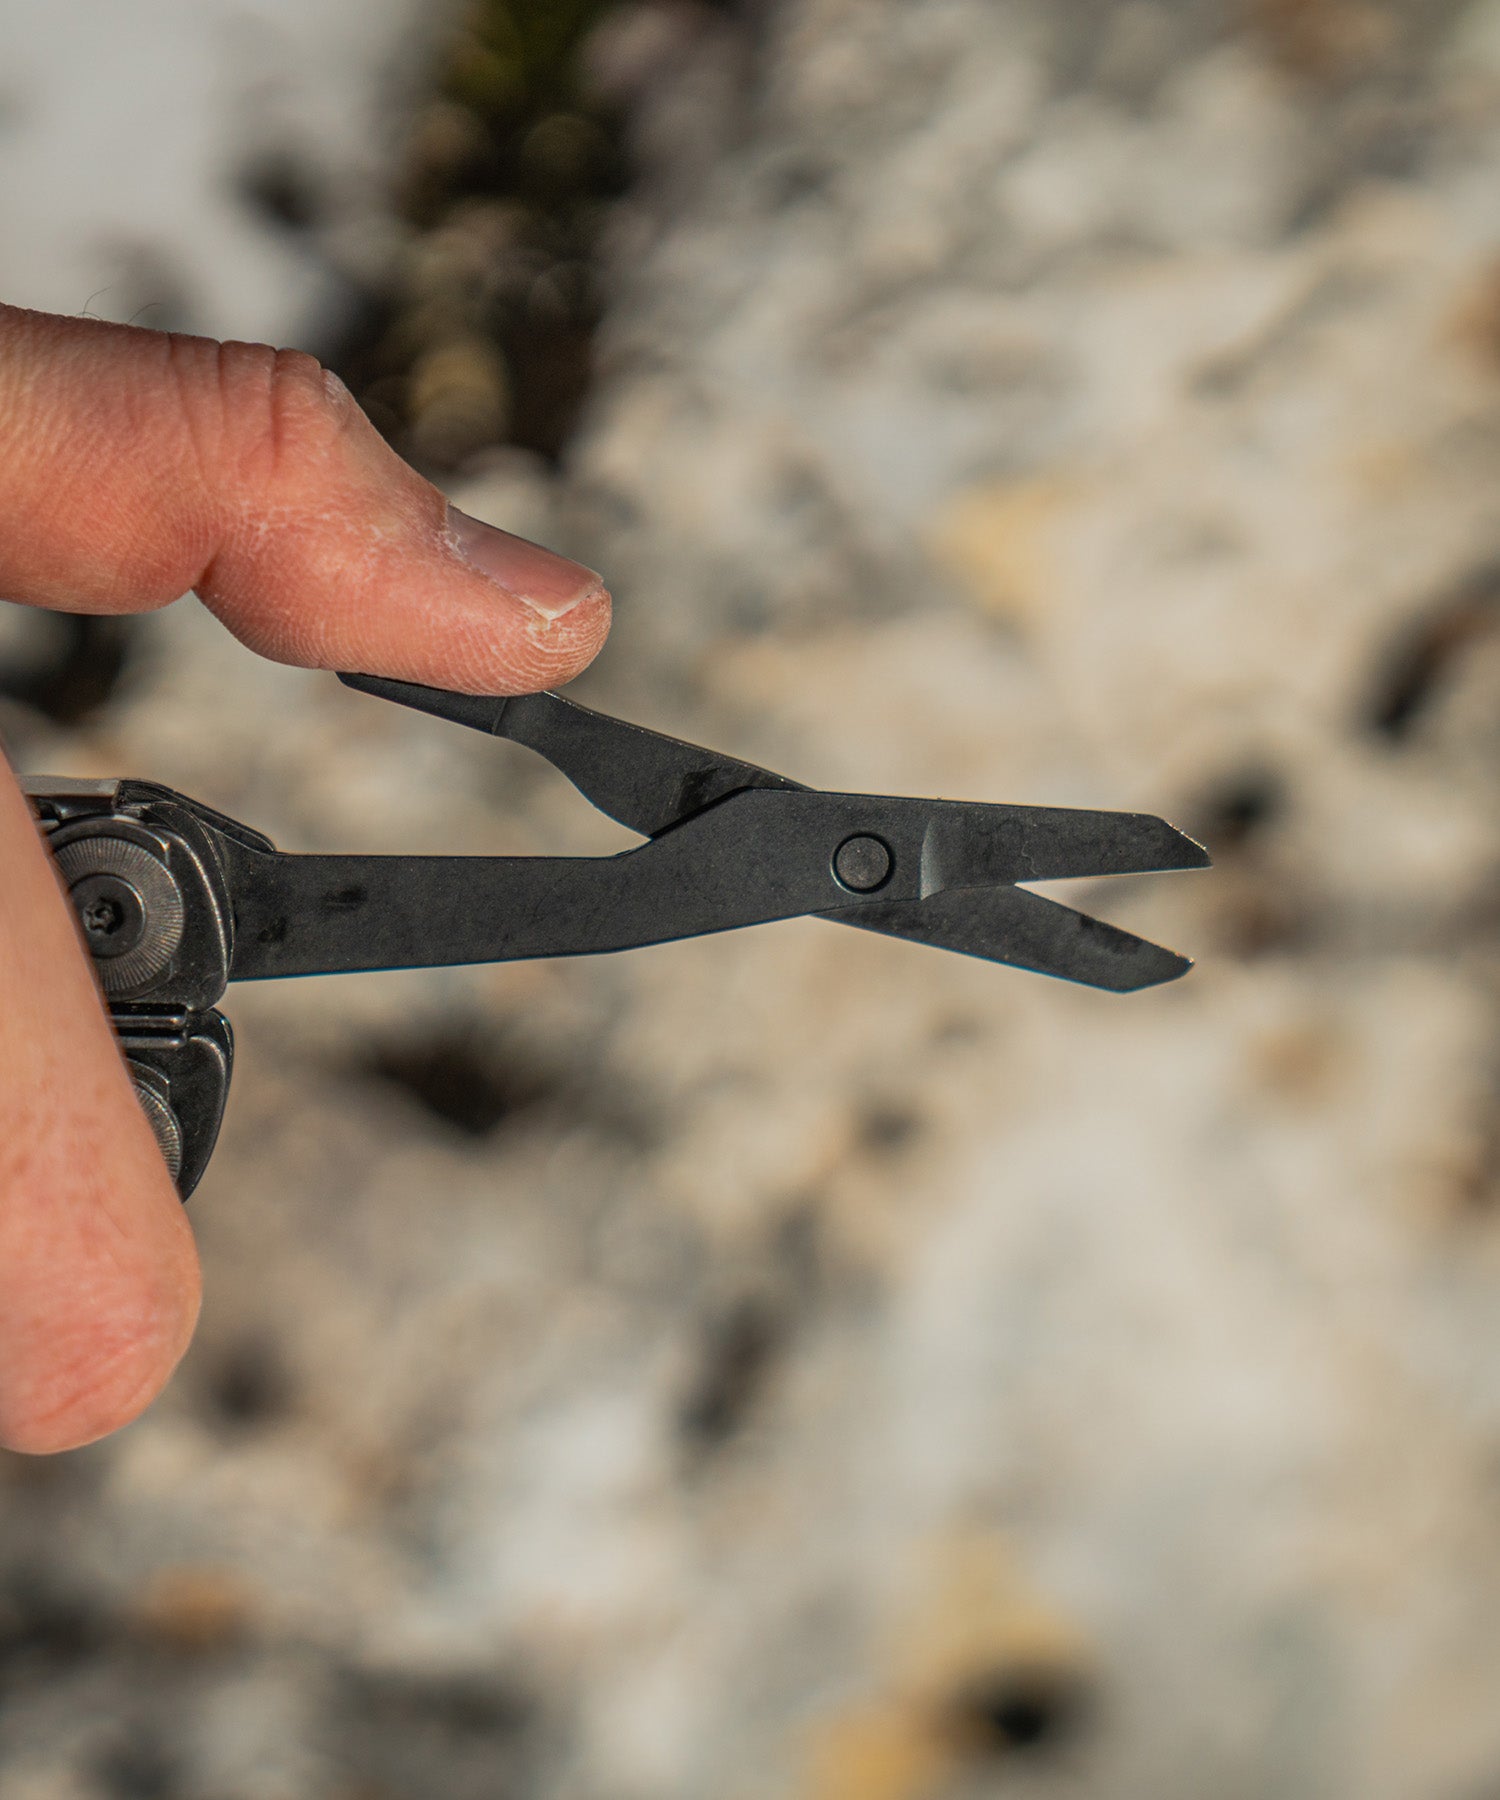 Dettaglio delle forbici del Leatherman Surge Black in mano a Paolo di Backpacco durante un trekking